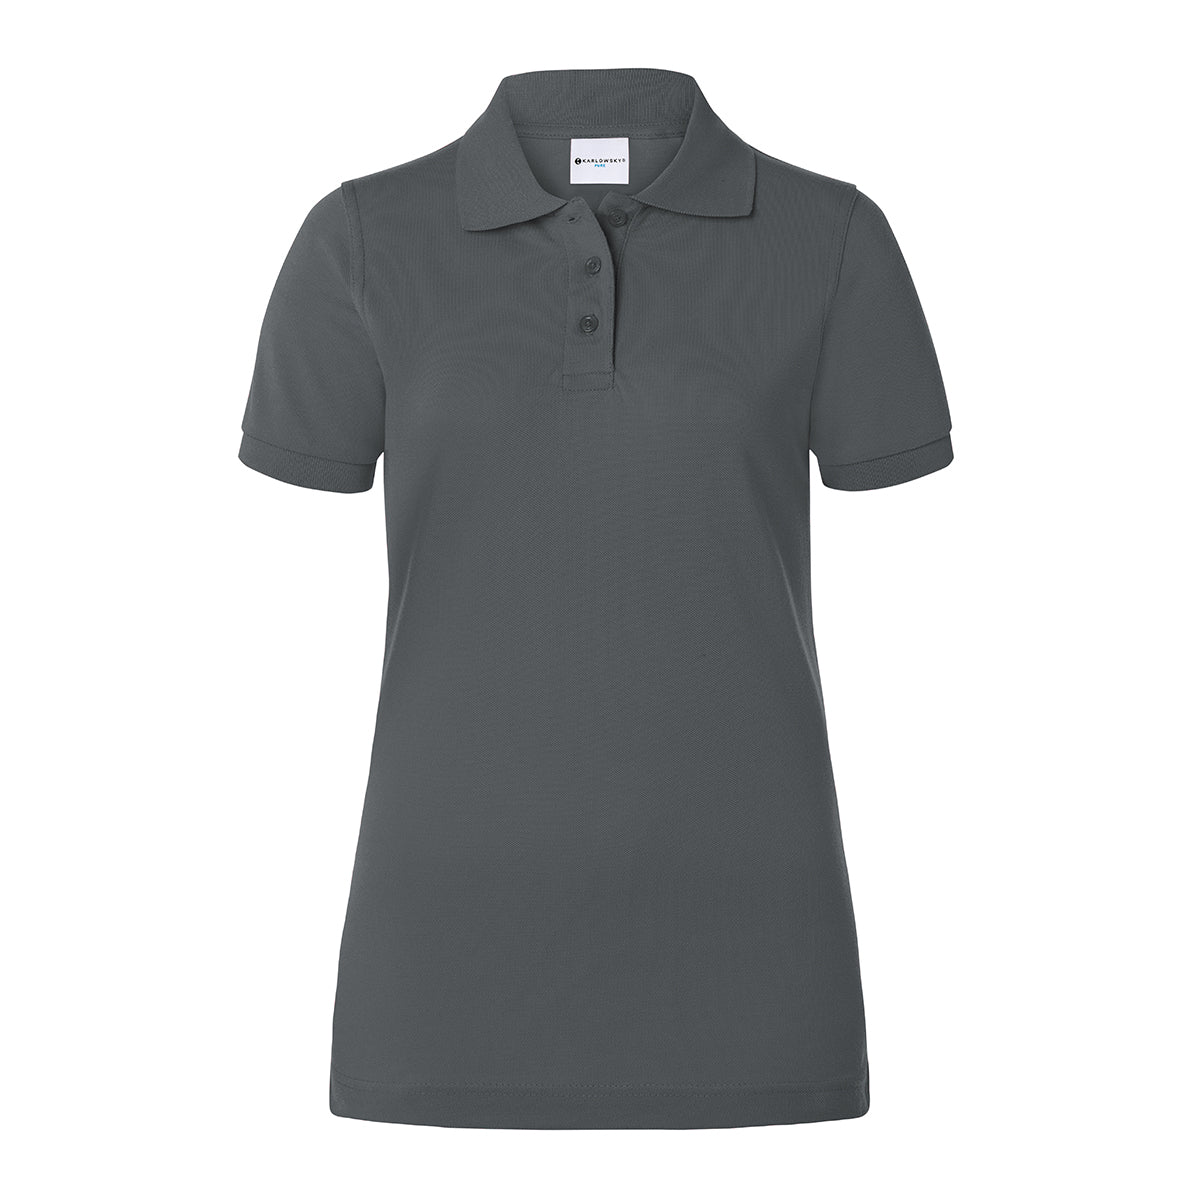 Karlowsky - Arbejdsbeklædning Basic Poloshirt til damer - Antracit - Størrelse: S